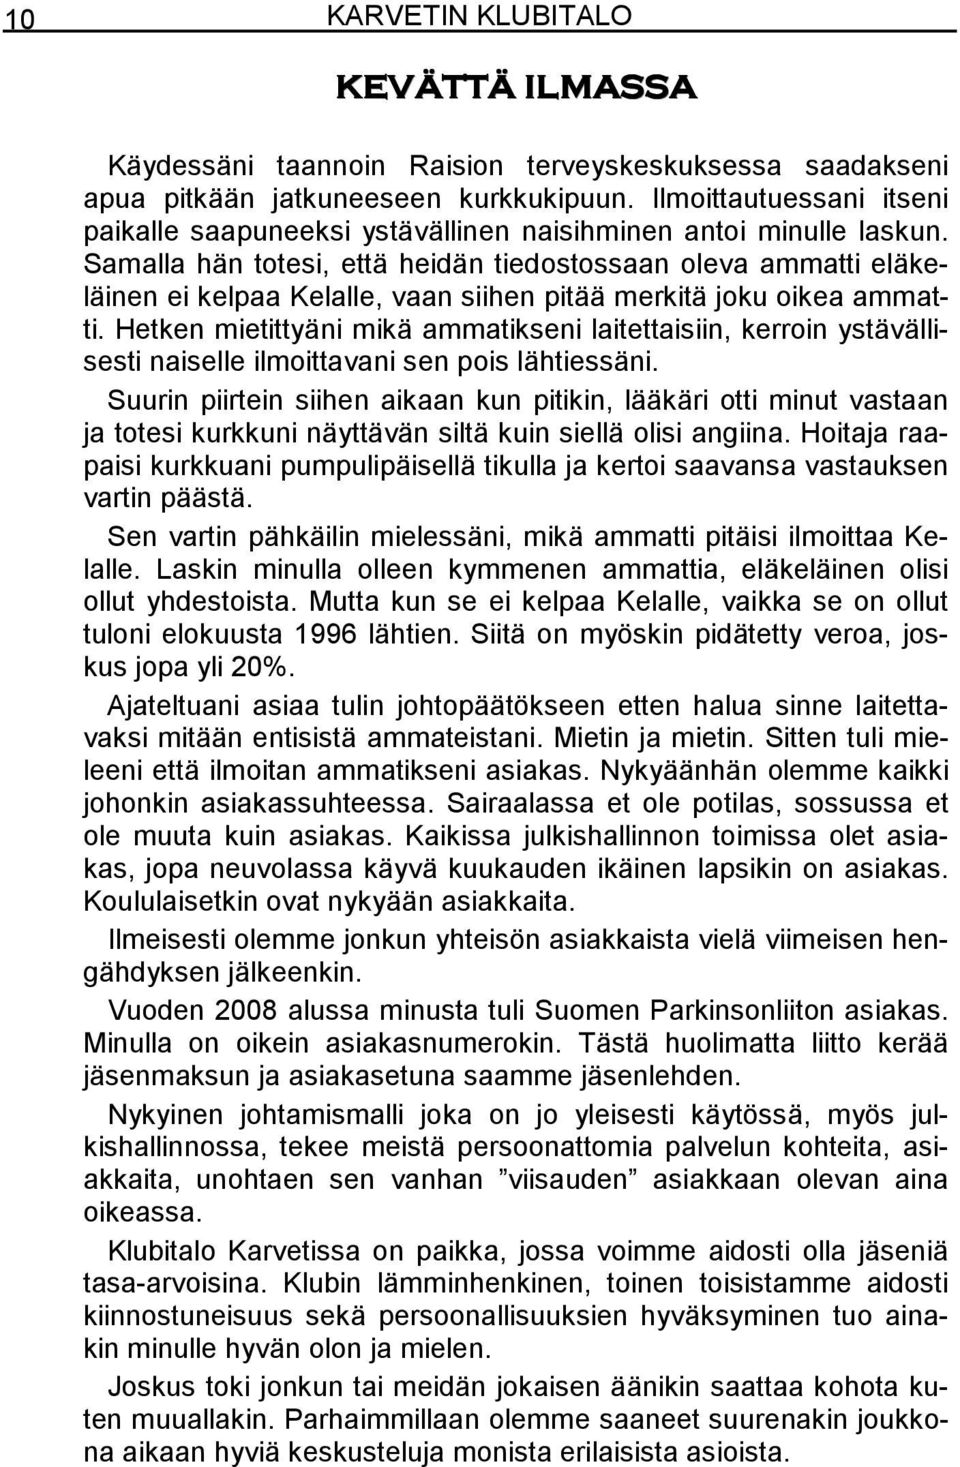 Julkaisija: Karvetin klubitalo. Painopaikka: Hallintoyksikkö. Osoite:  Karvetin klubitalo Ripikatu Naantali - PDF Ilmainen lataus